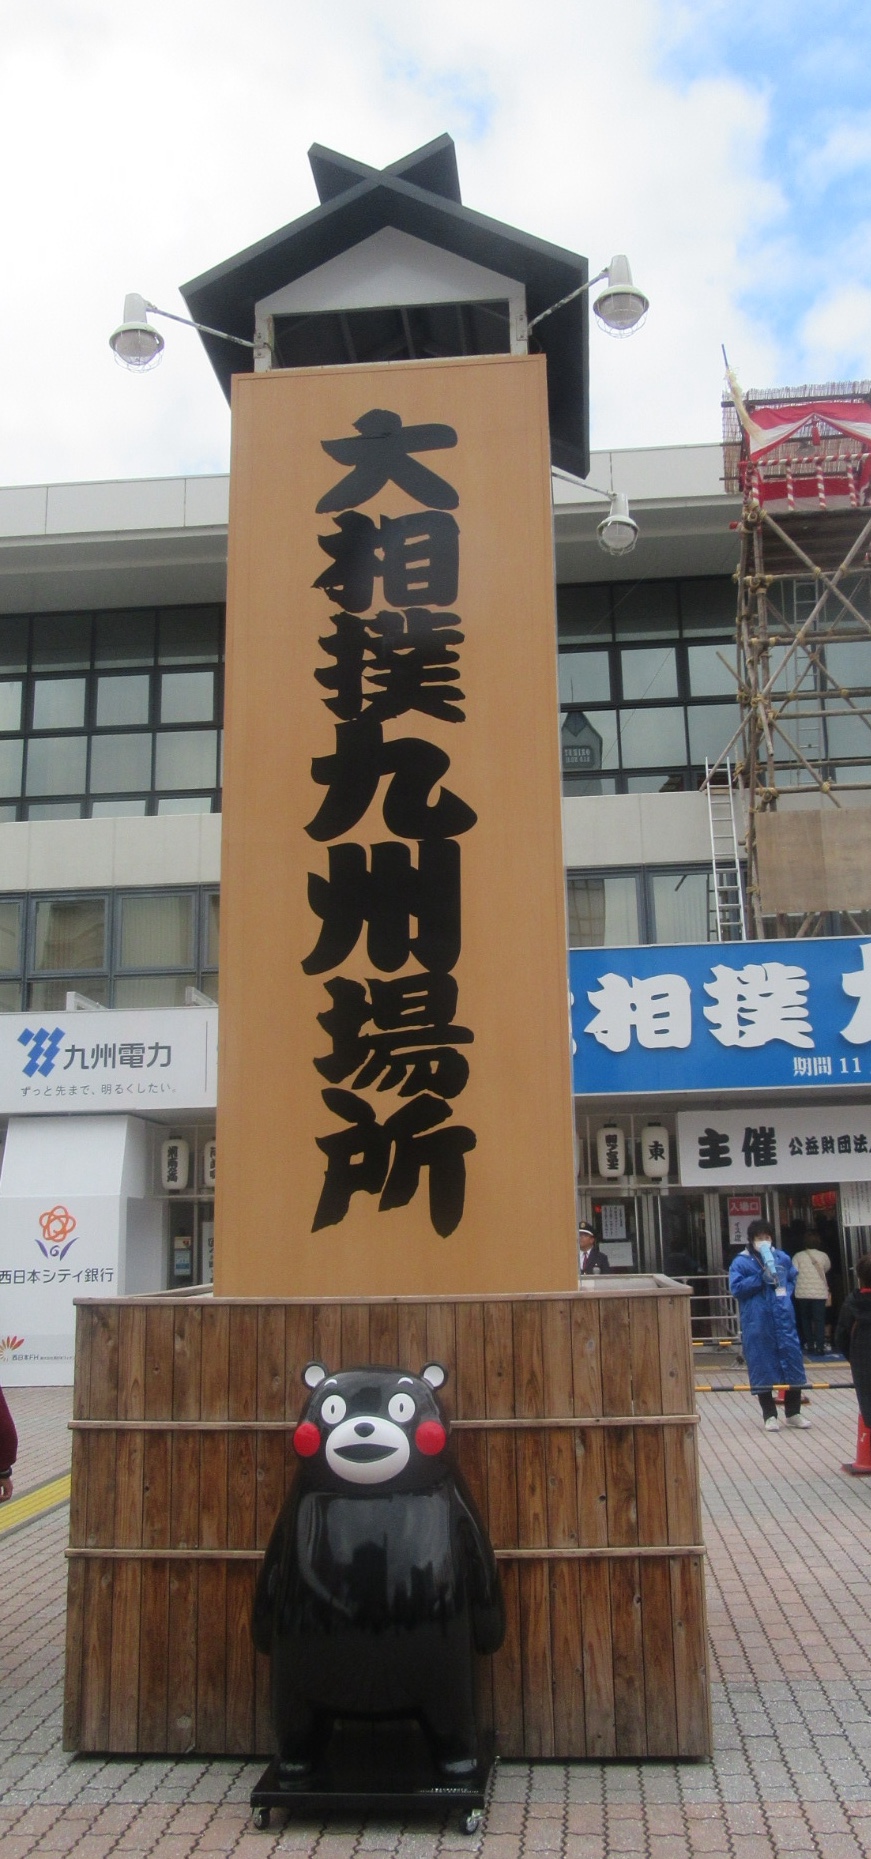 大相撲九州場所・福岡国際センター入口。